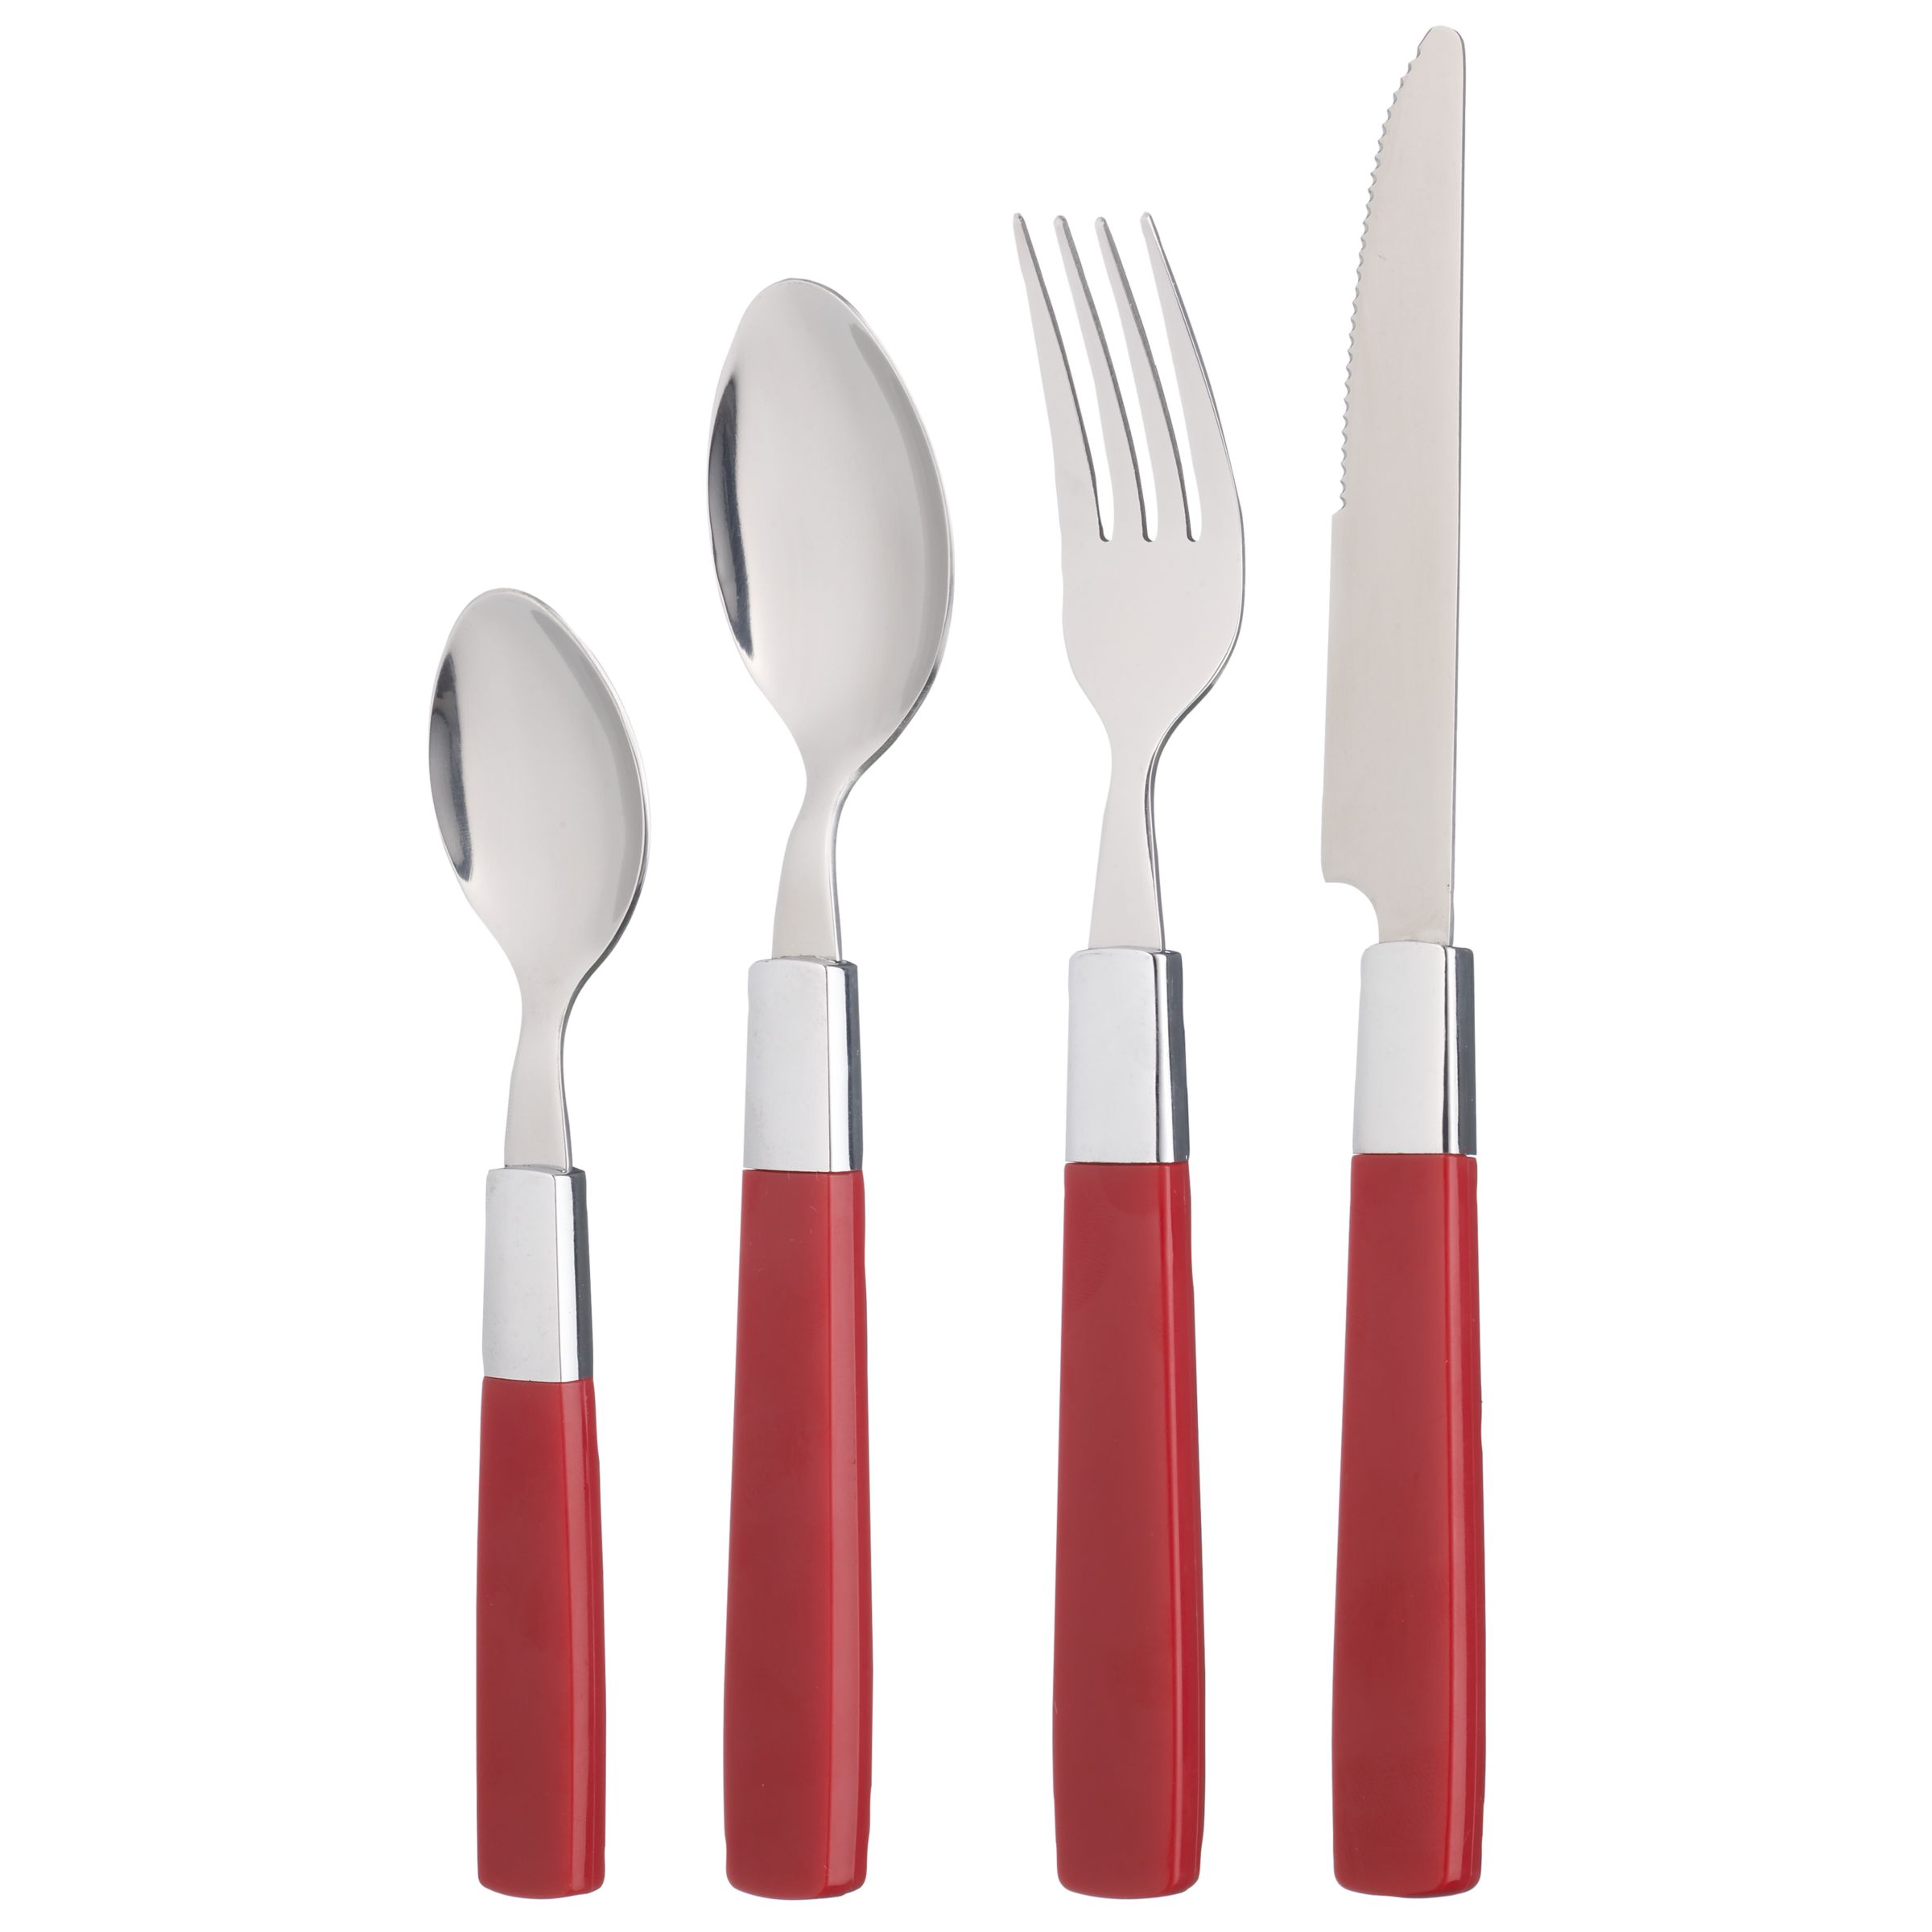 John Lewis Lido 16-Piece Cutlery Set, Red